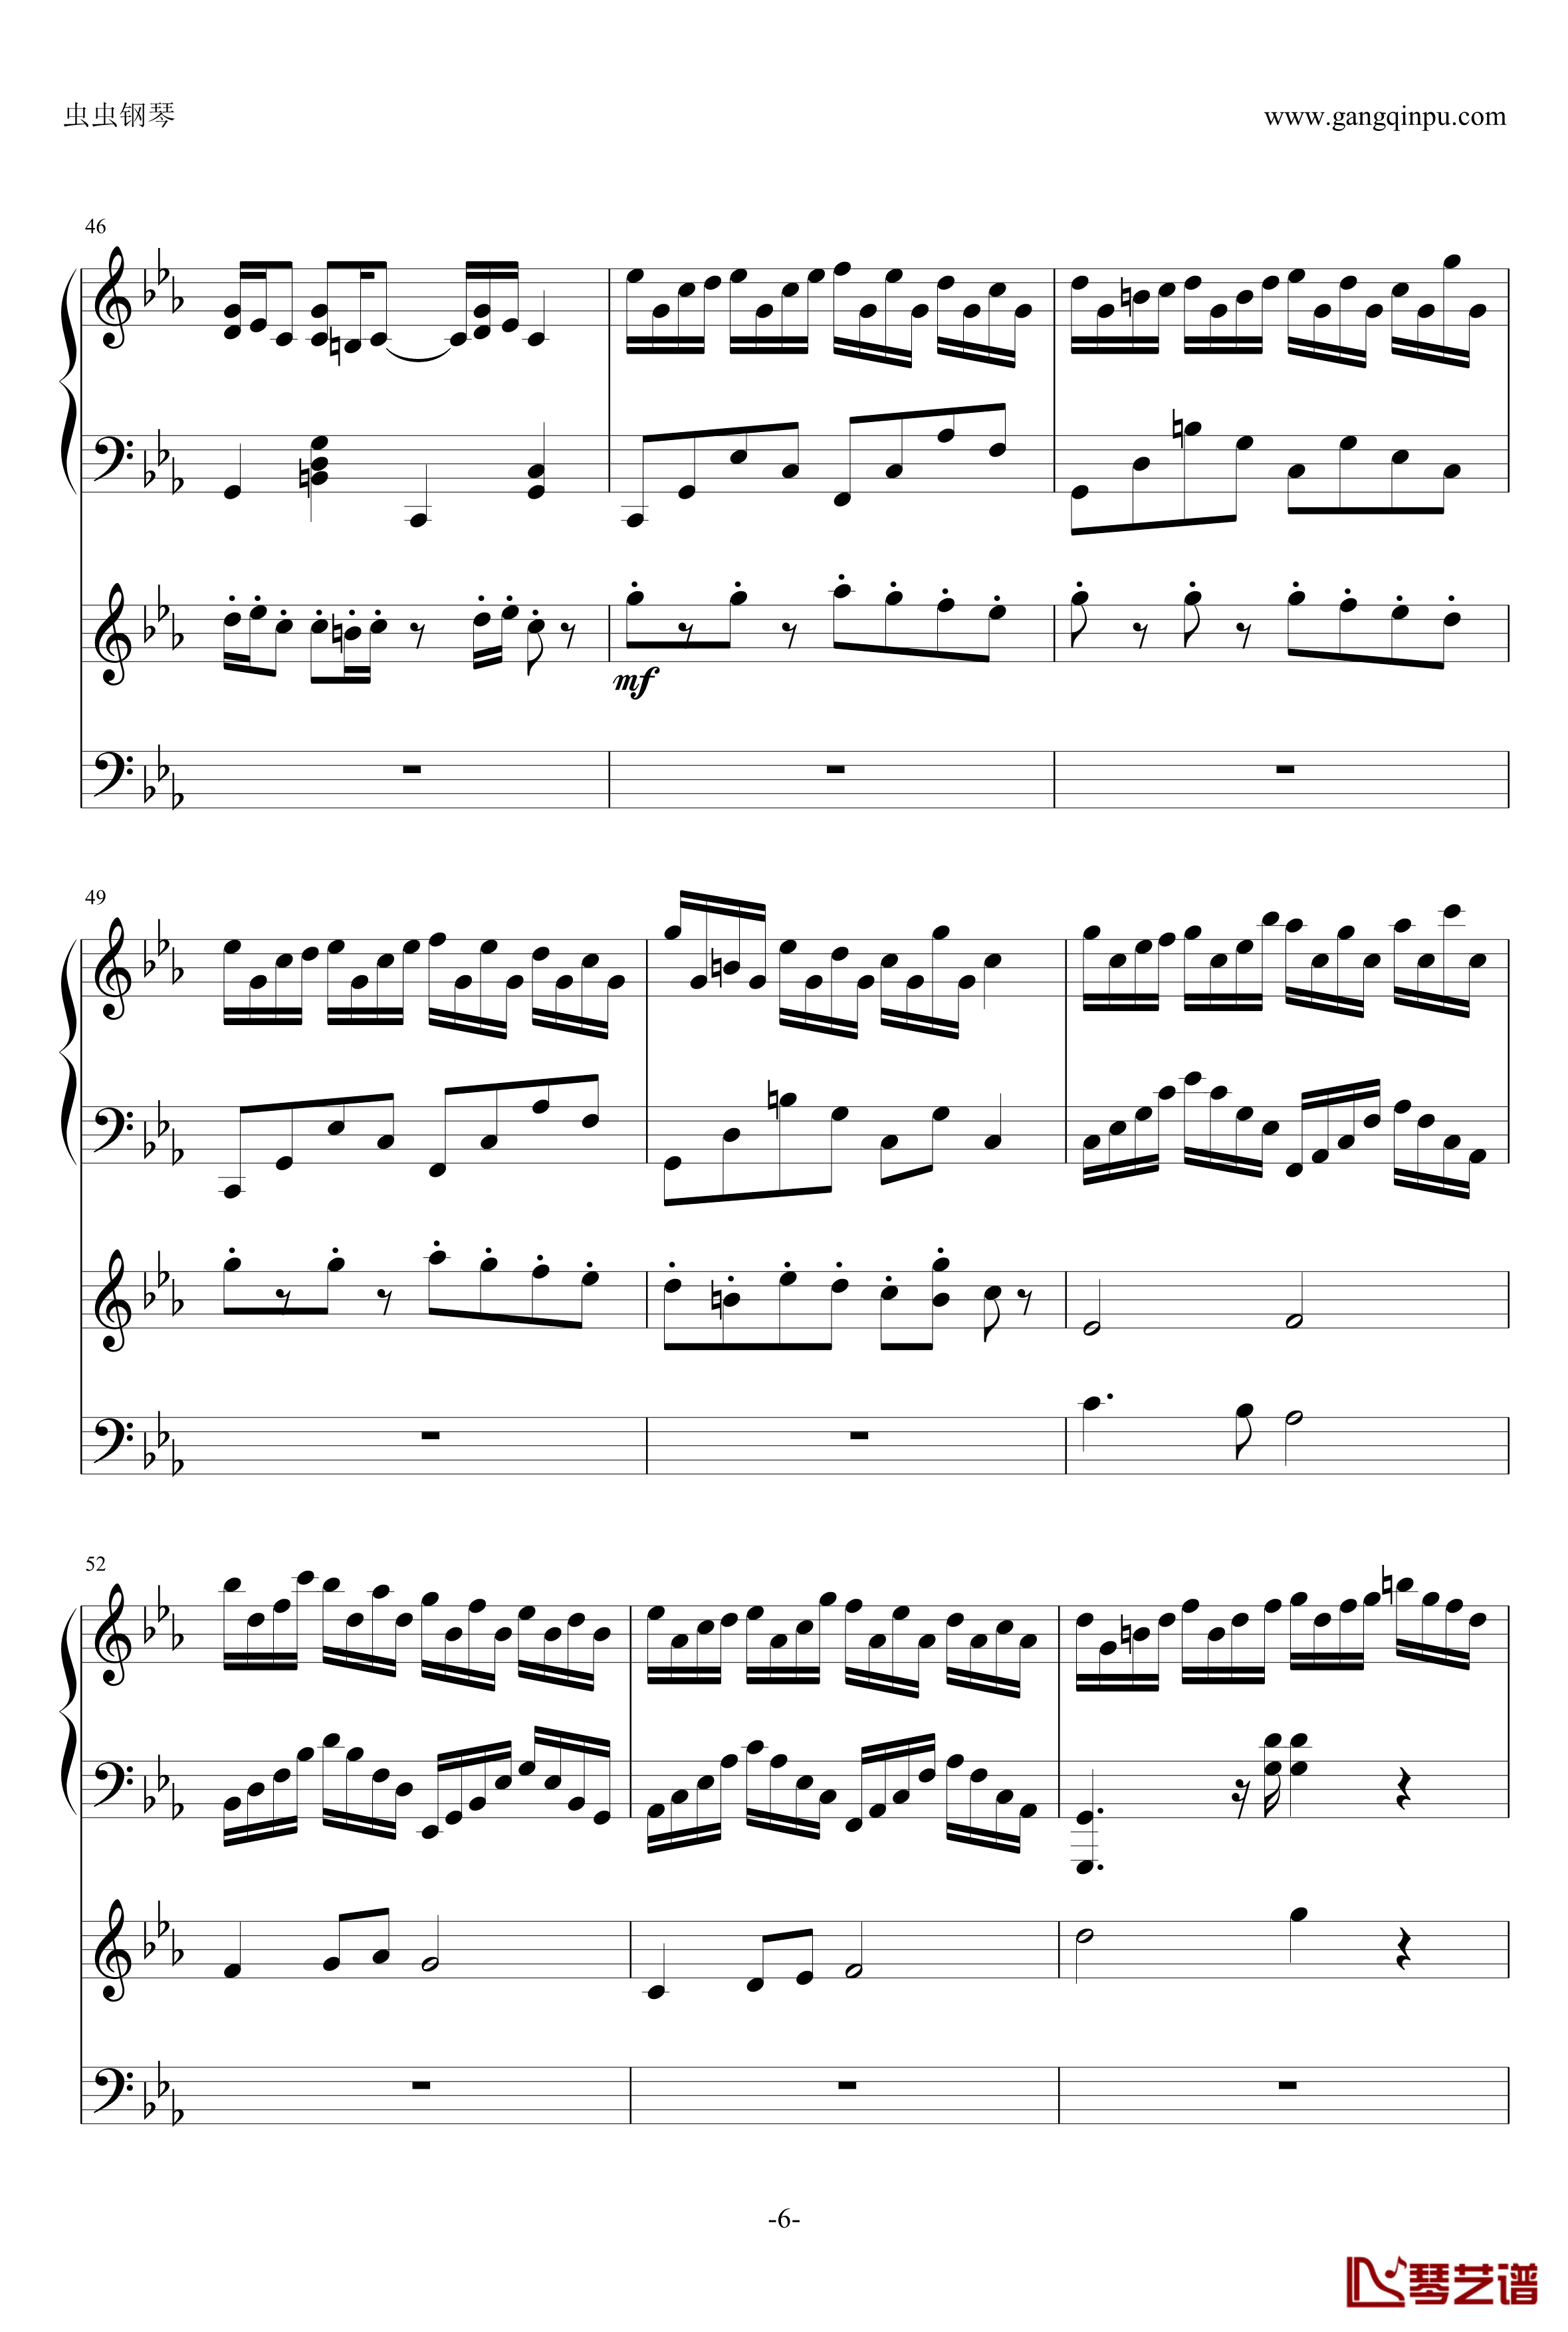 克罗地亚狂想曲钢琴谱-钢琴电子琴无和弦合奏-马克西姆-Maksim·Mrvica6